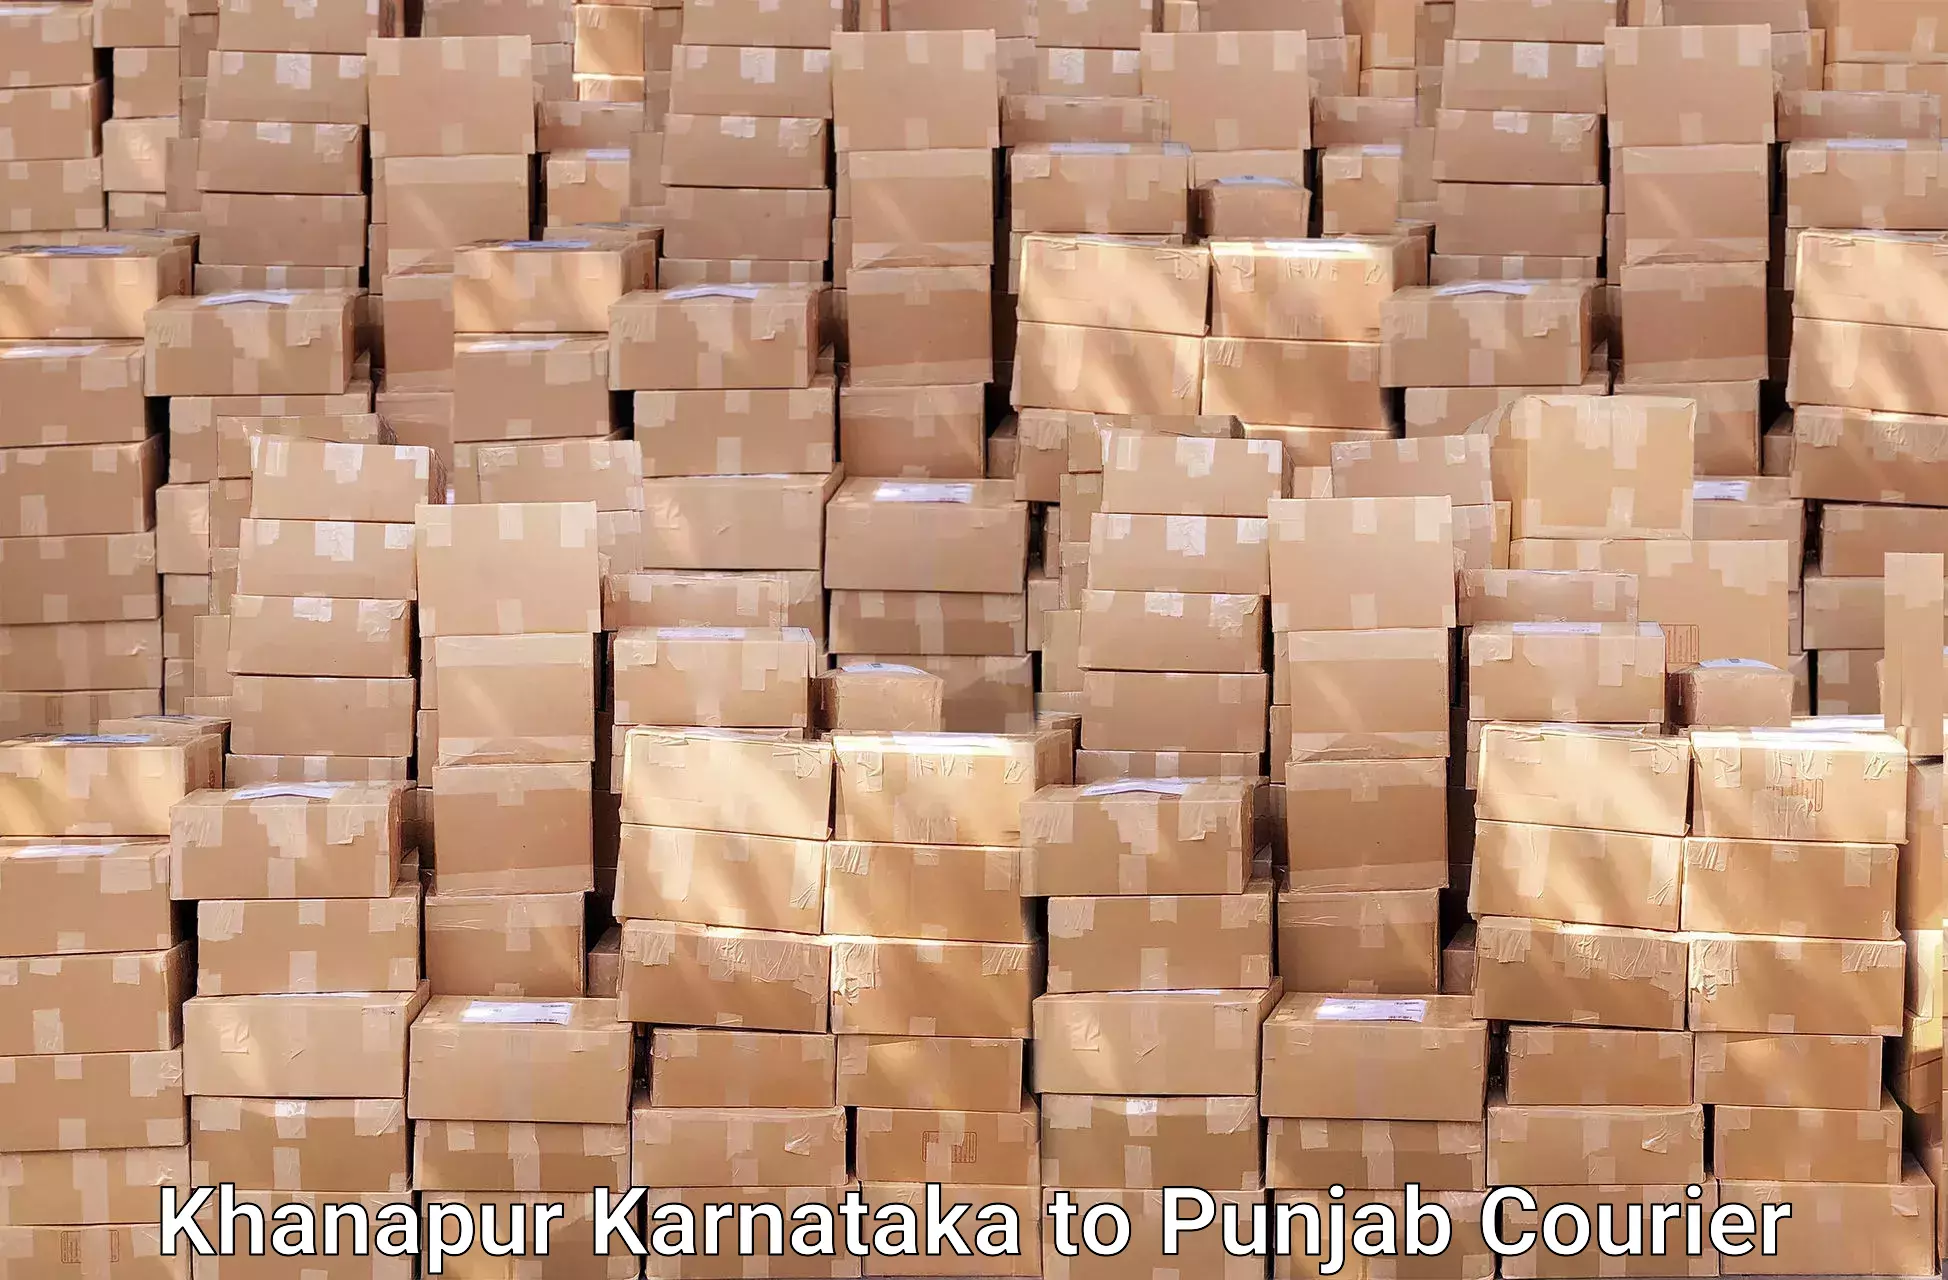 Furniture moving solutions Khanapur Karnataka to Khanna